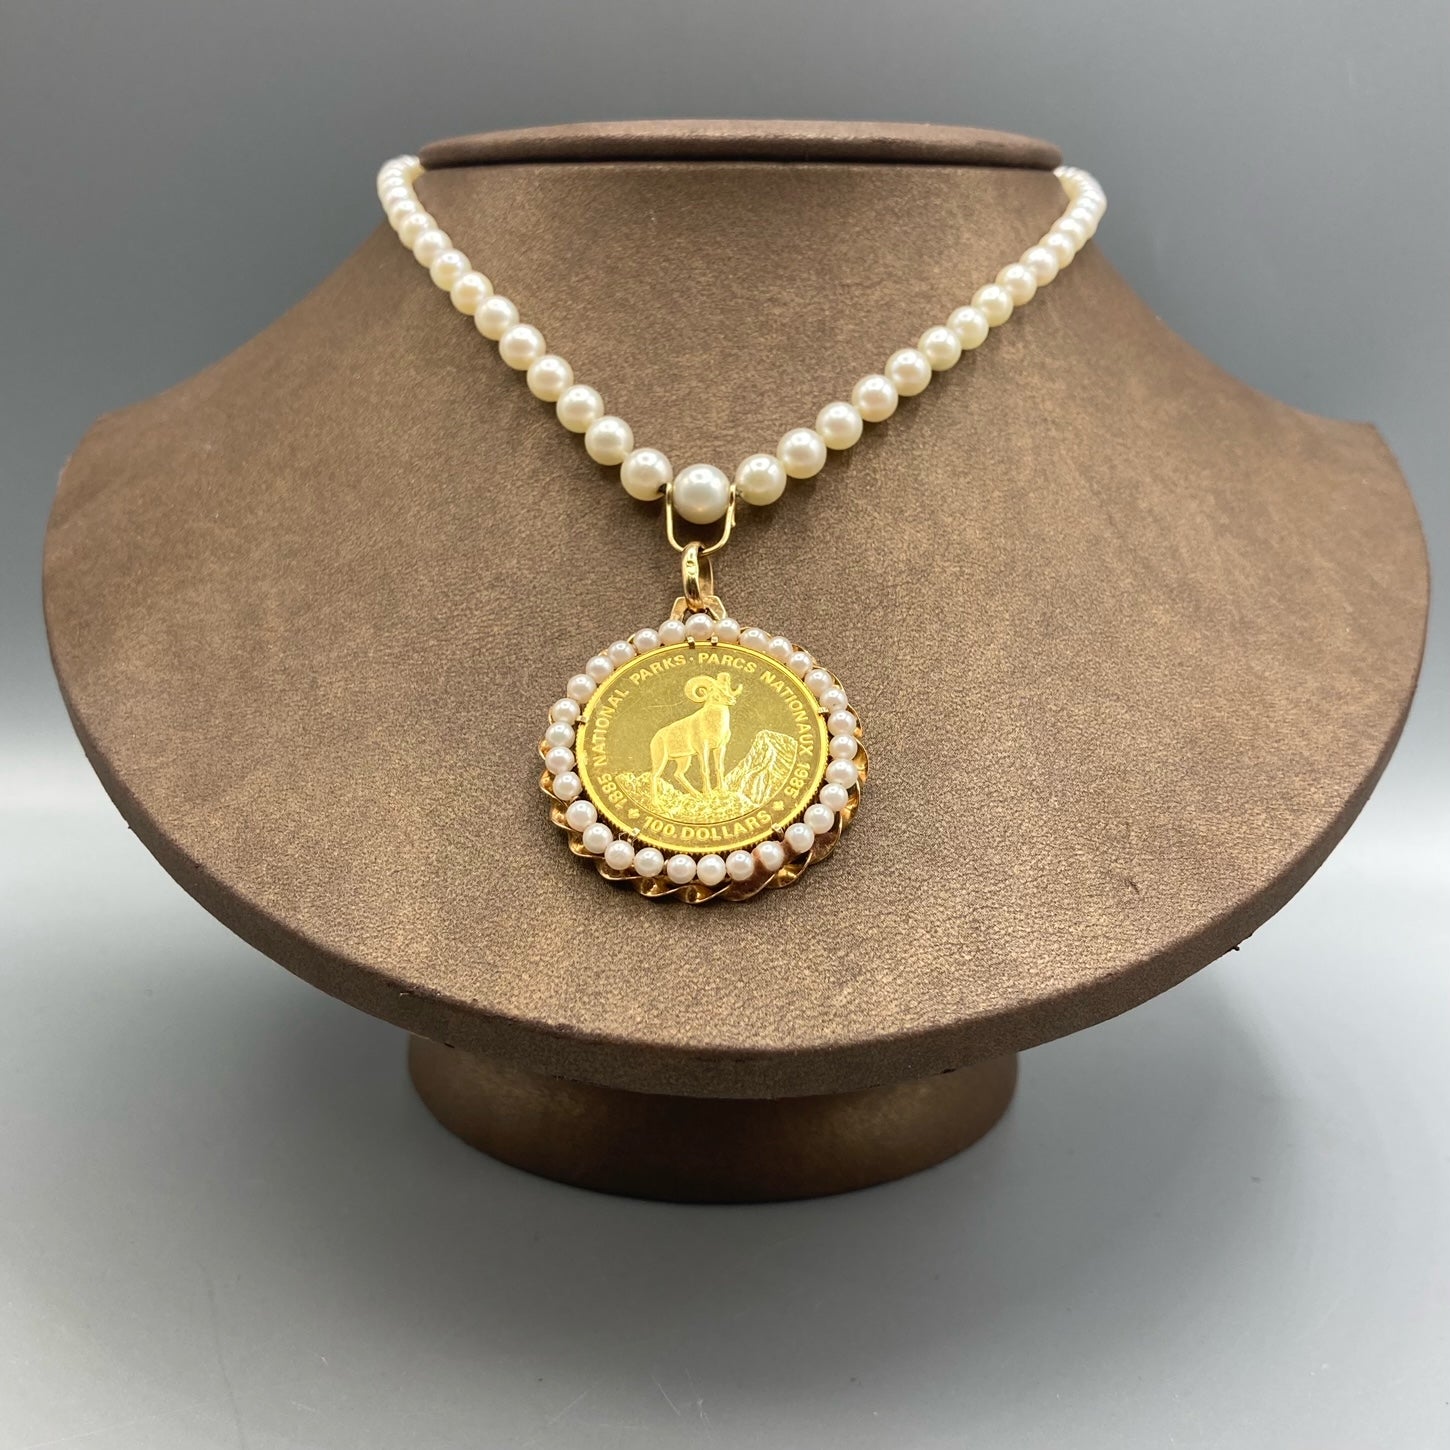 1985 Canada 100 Dollars Gold Coin Parcs nationaux sur collier de perles graduées